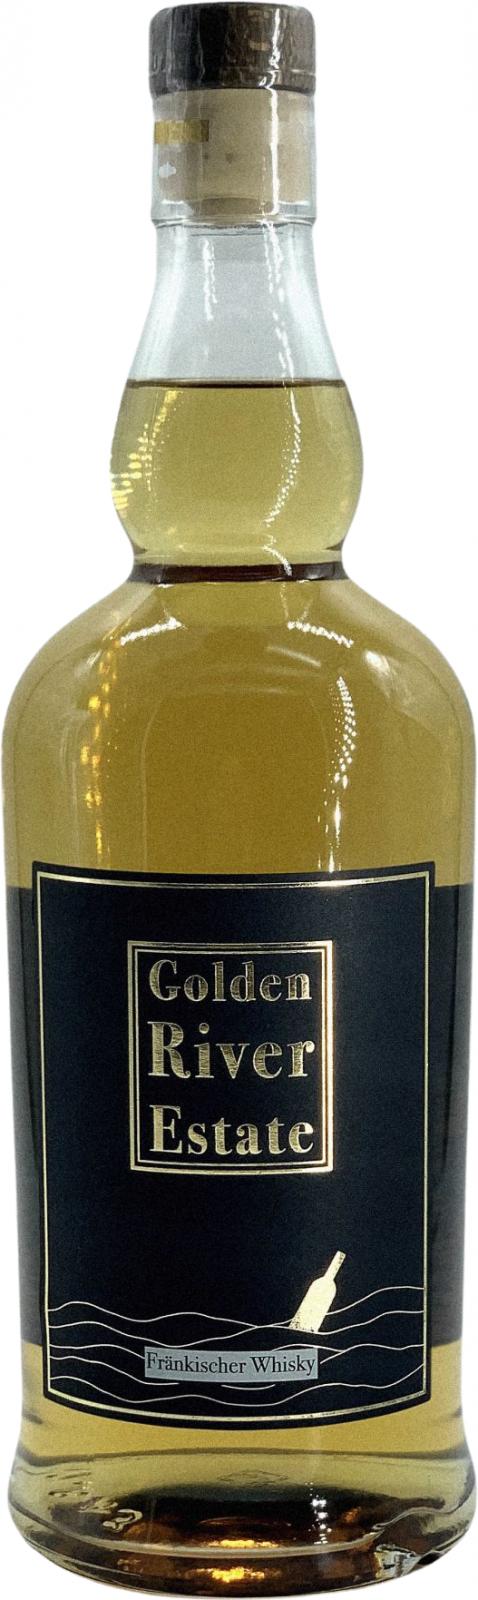 Golden River Estate Fränkischer Whisky